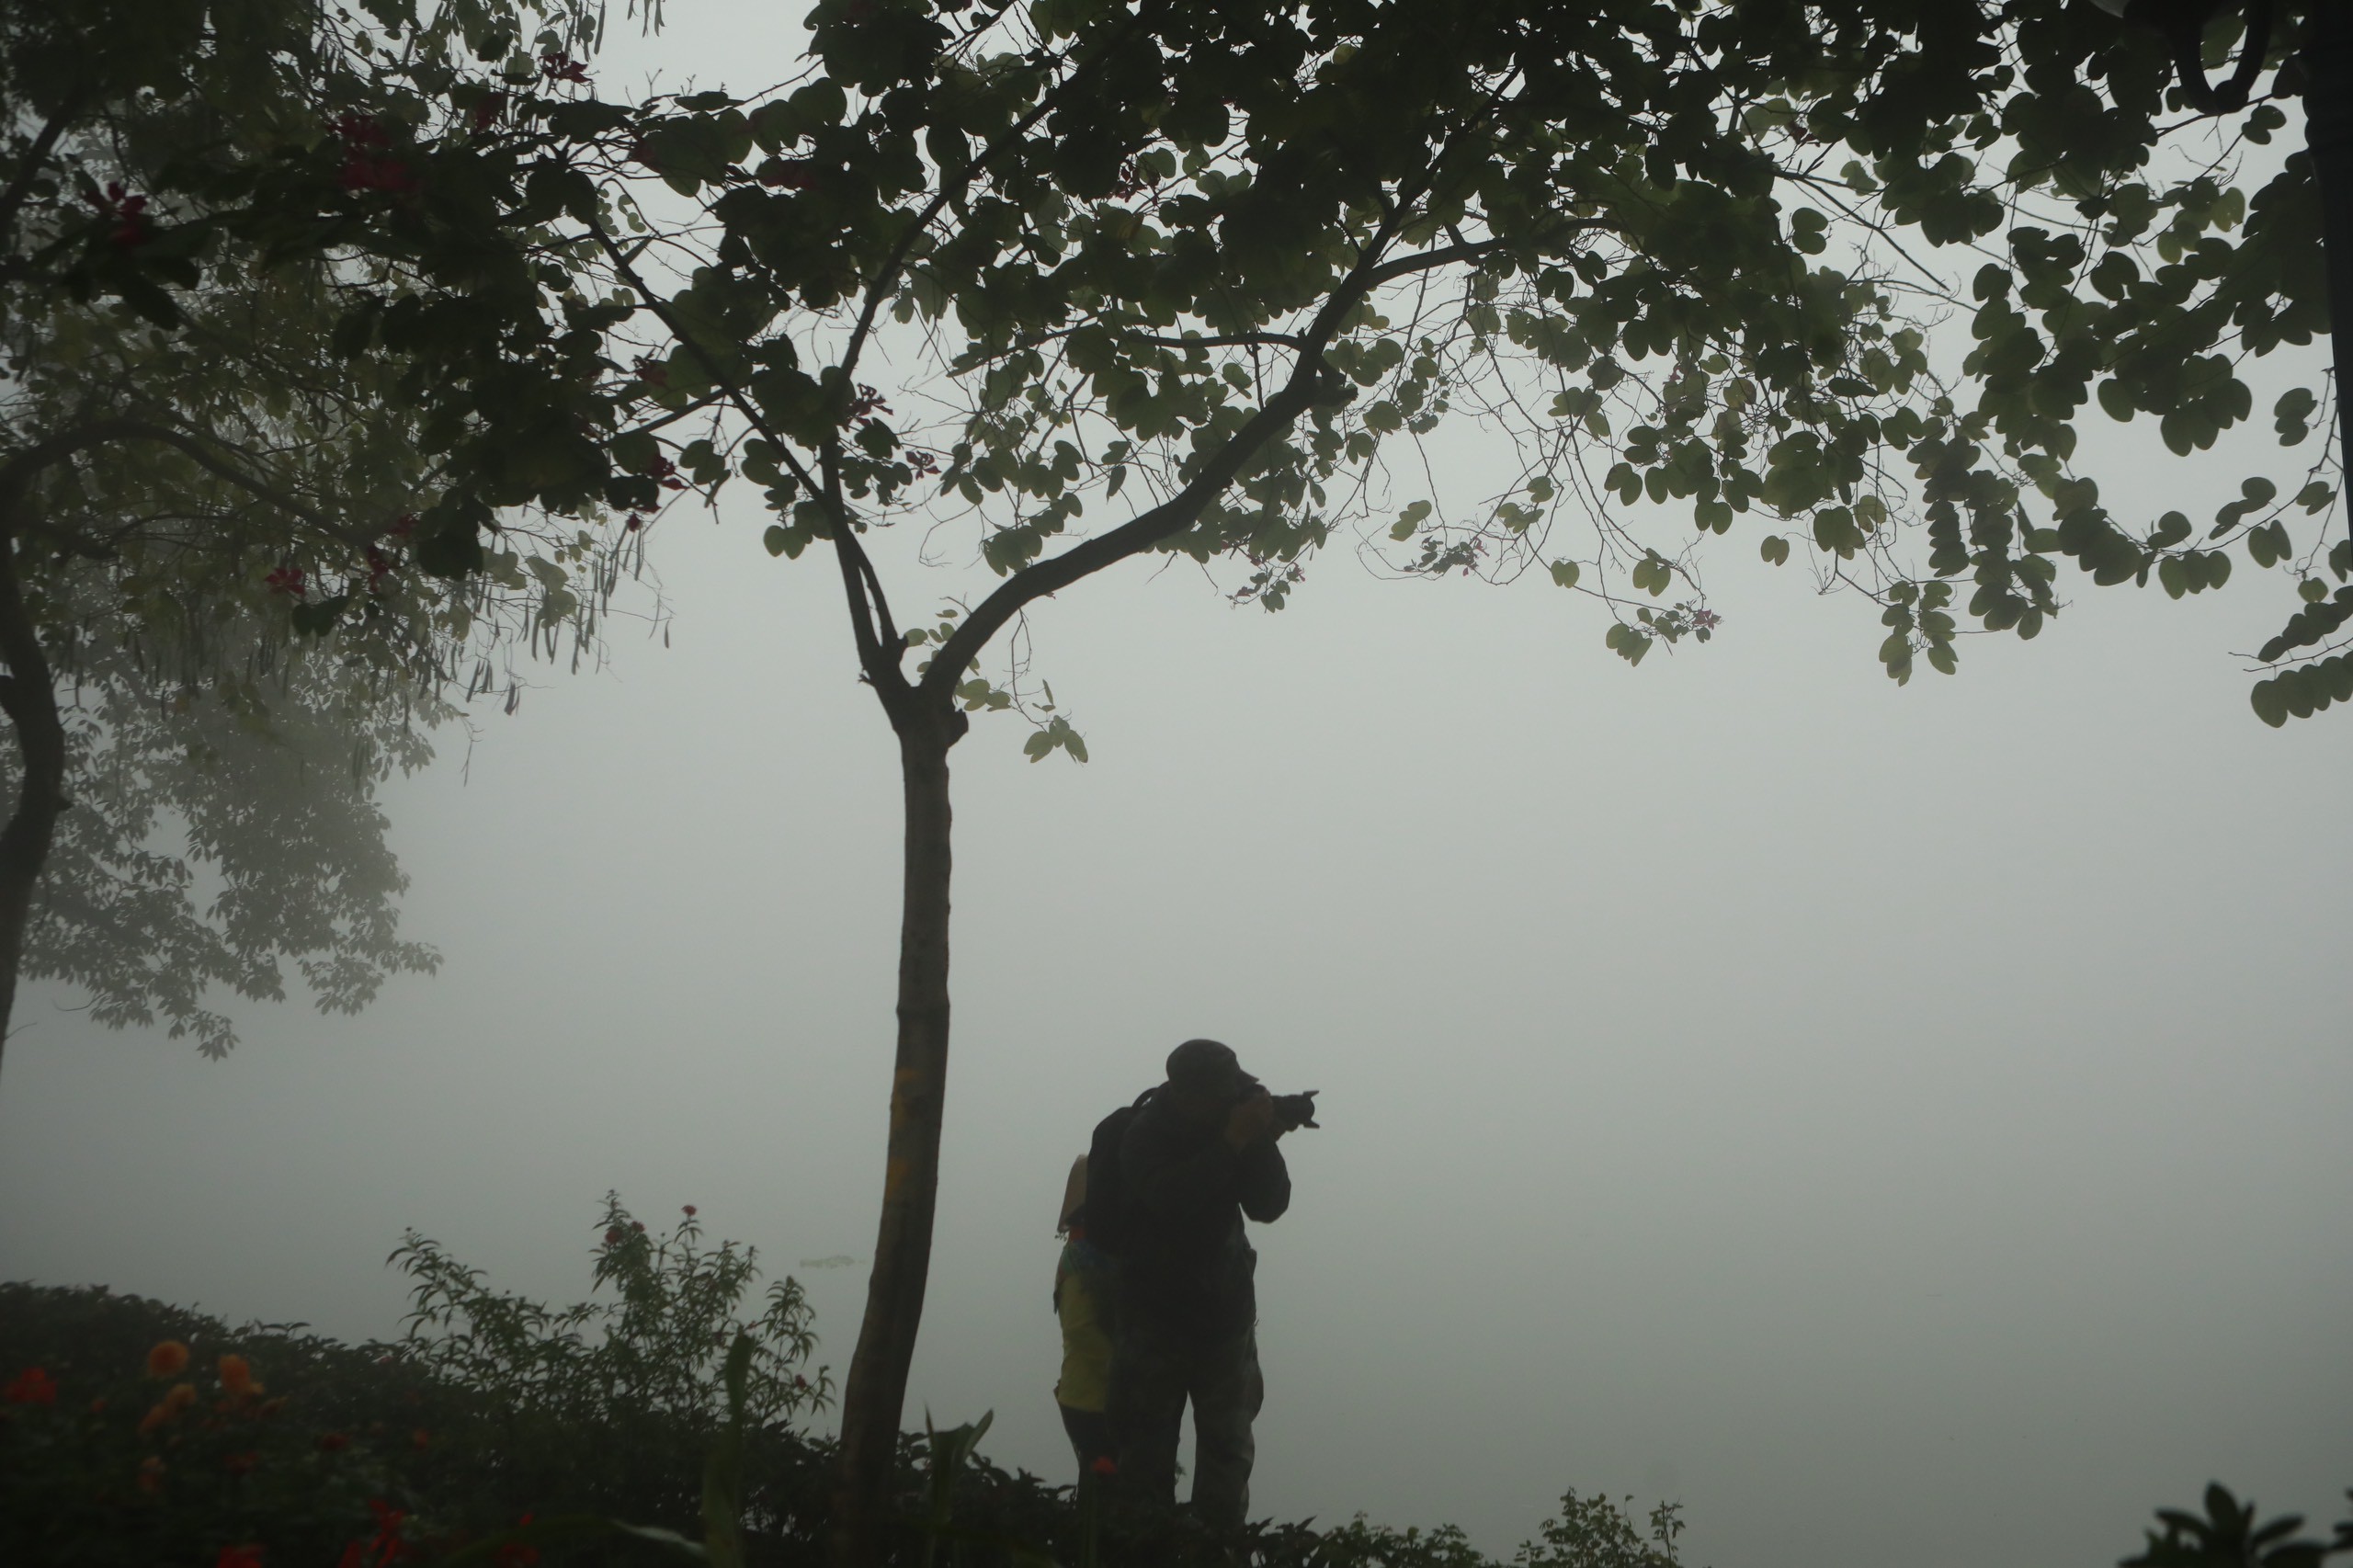 Sáng nay (2/2), Hà Nội được bao phủ trong màn sương mù dày đặc, nhiều người tranh thủ đến Hồ Gươm để "săn" những bức hình đặc biệt.